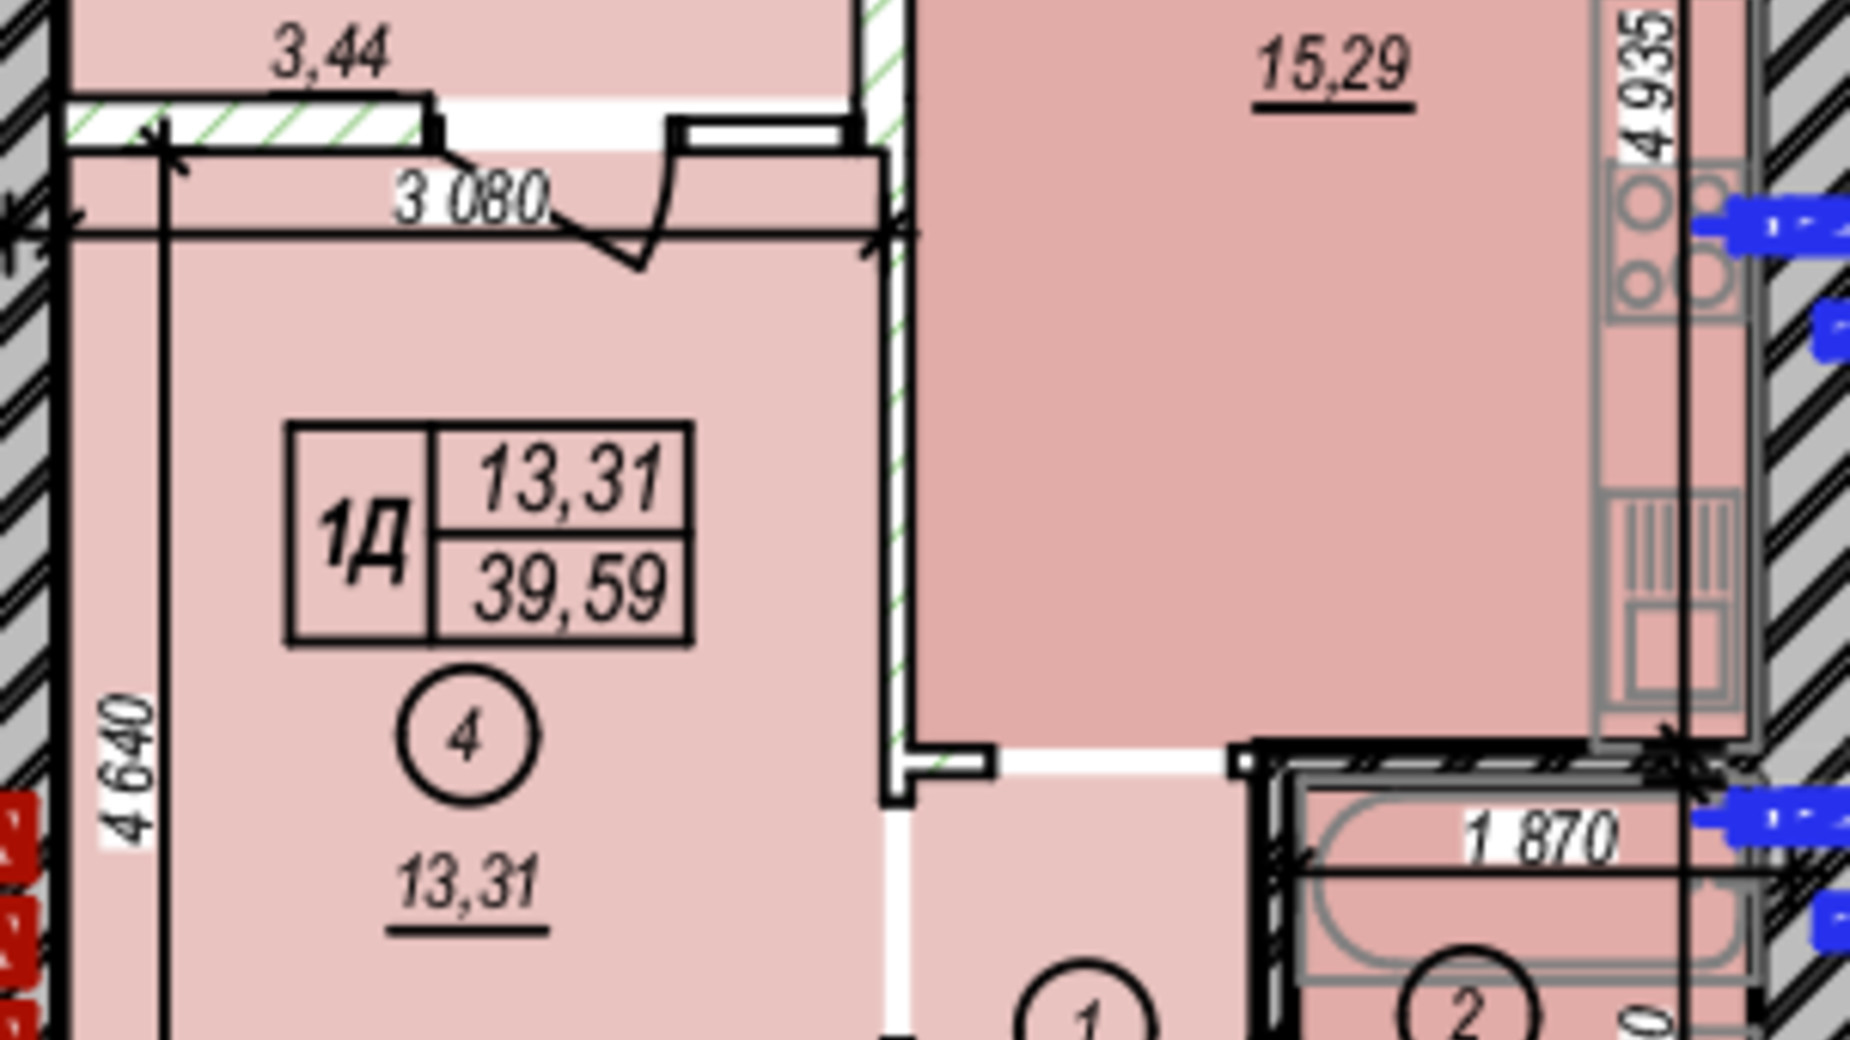 Планировка 1-комнатной квартиры в ЖК Молодость 39.59 м², фото 675377